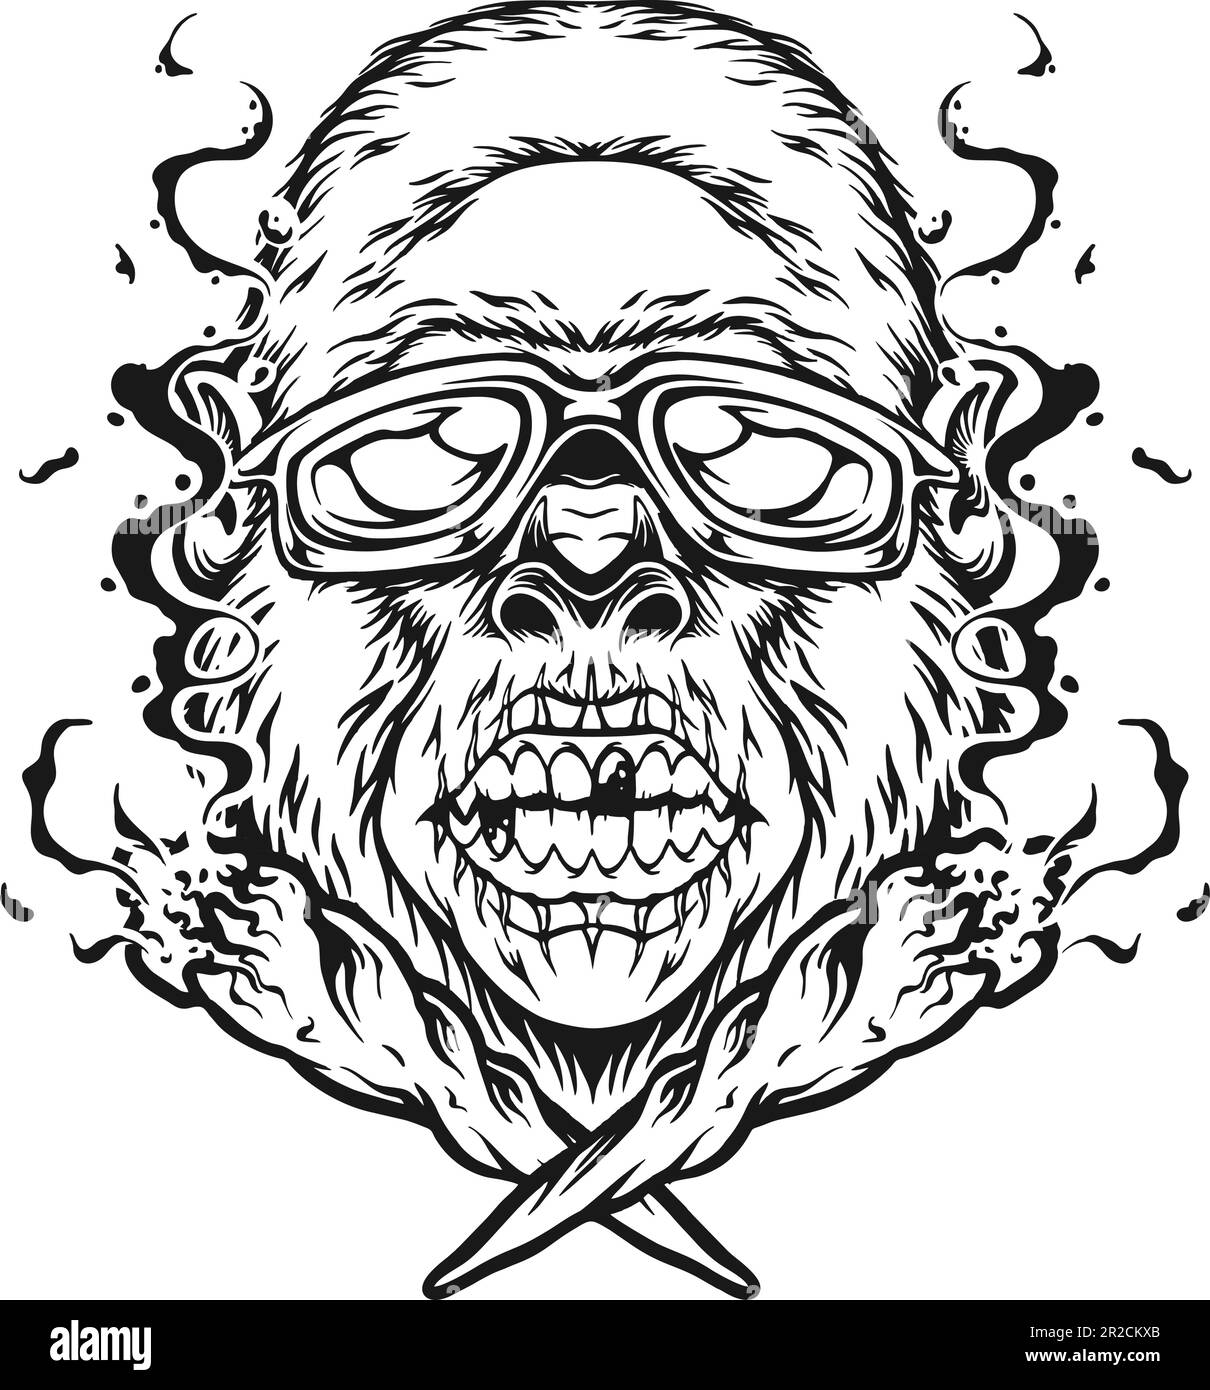 Unheimlich flippiger Zombie Gorilla Monster rauchendes Marihuana Logo Illustration Silhouette Vektorbilder für deine Arbeit Logo, Merchandise-T-Shirt, sticke Stock Vektor